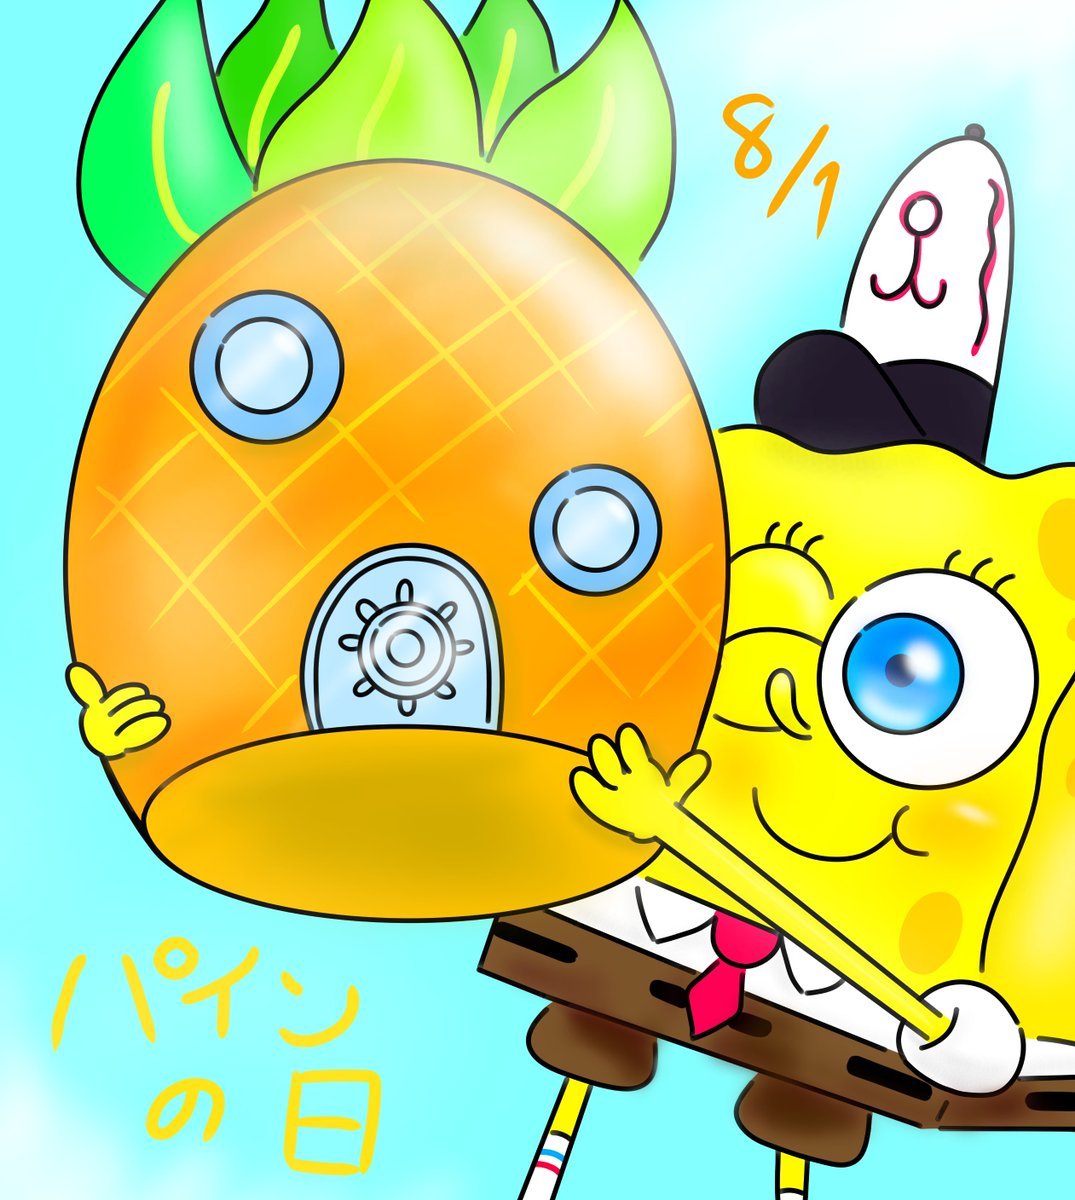 Lain Auf Twitter スクエアスポンジパンツボブ スポンジボブ スポンジボブ大好き 絵描きさんと繋がりたい パンツの日 Spongebob パトリック サンディ カーニさん プランクトン イカルド T Co 6yrntg8bso T Co Pkfxn9wfqy